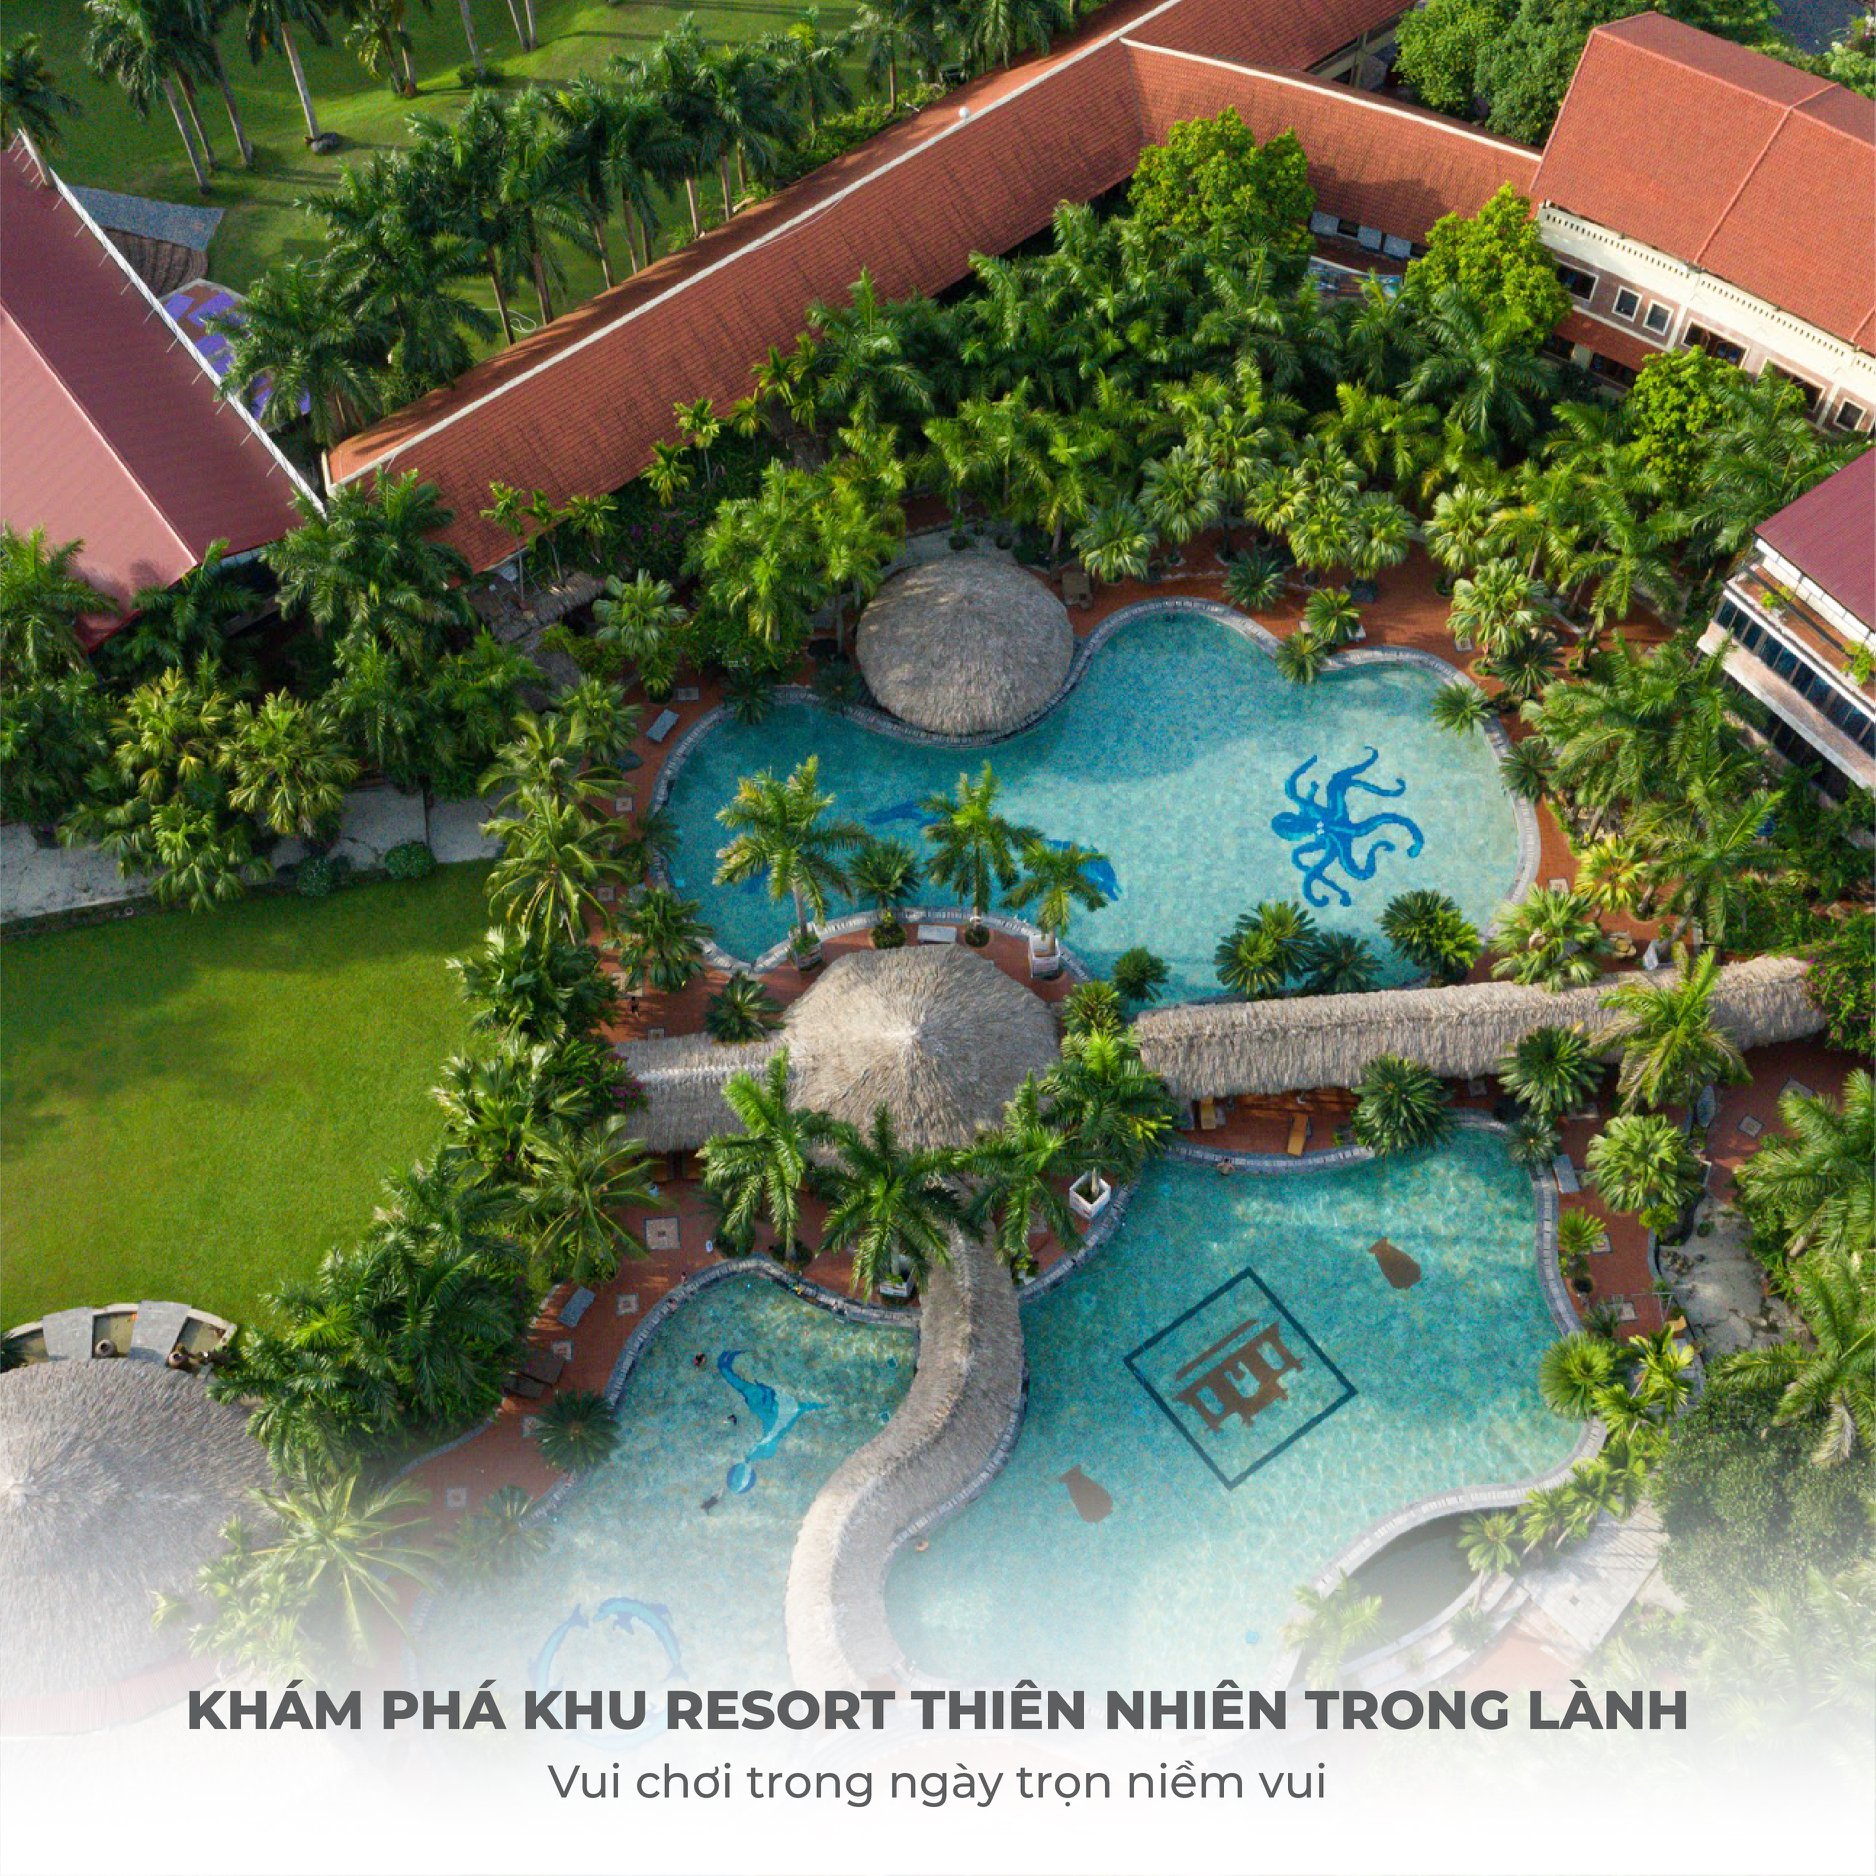 Tận hưởng ngày cuối tuần thảnh thơi ở khu resort thiên nhiên trong lành Asean Resort Ba Vì ngay gần kề Hà Nội